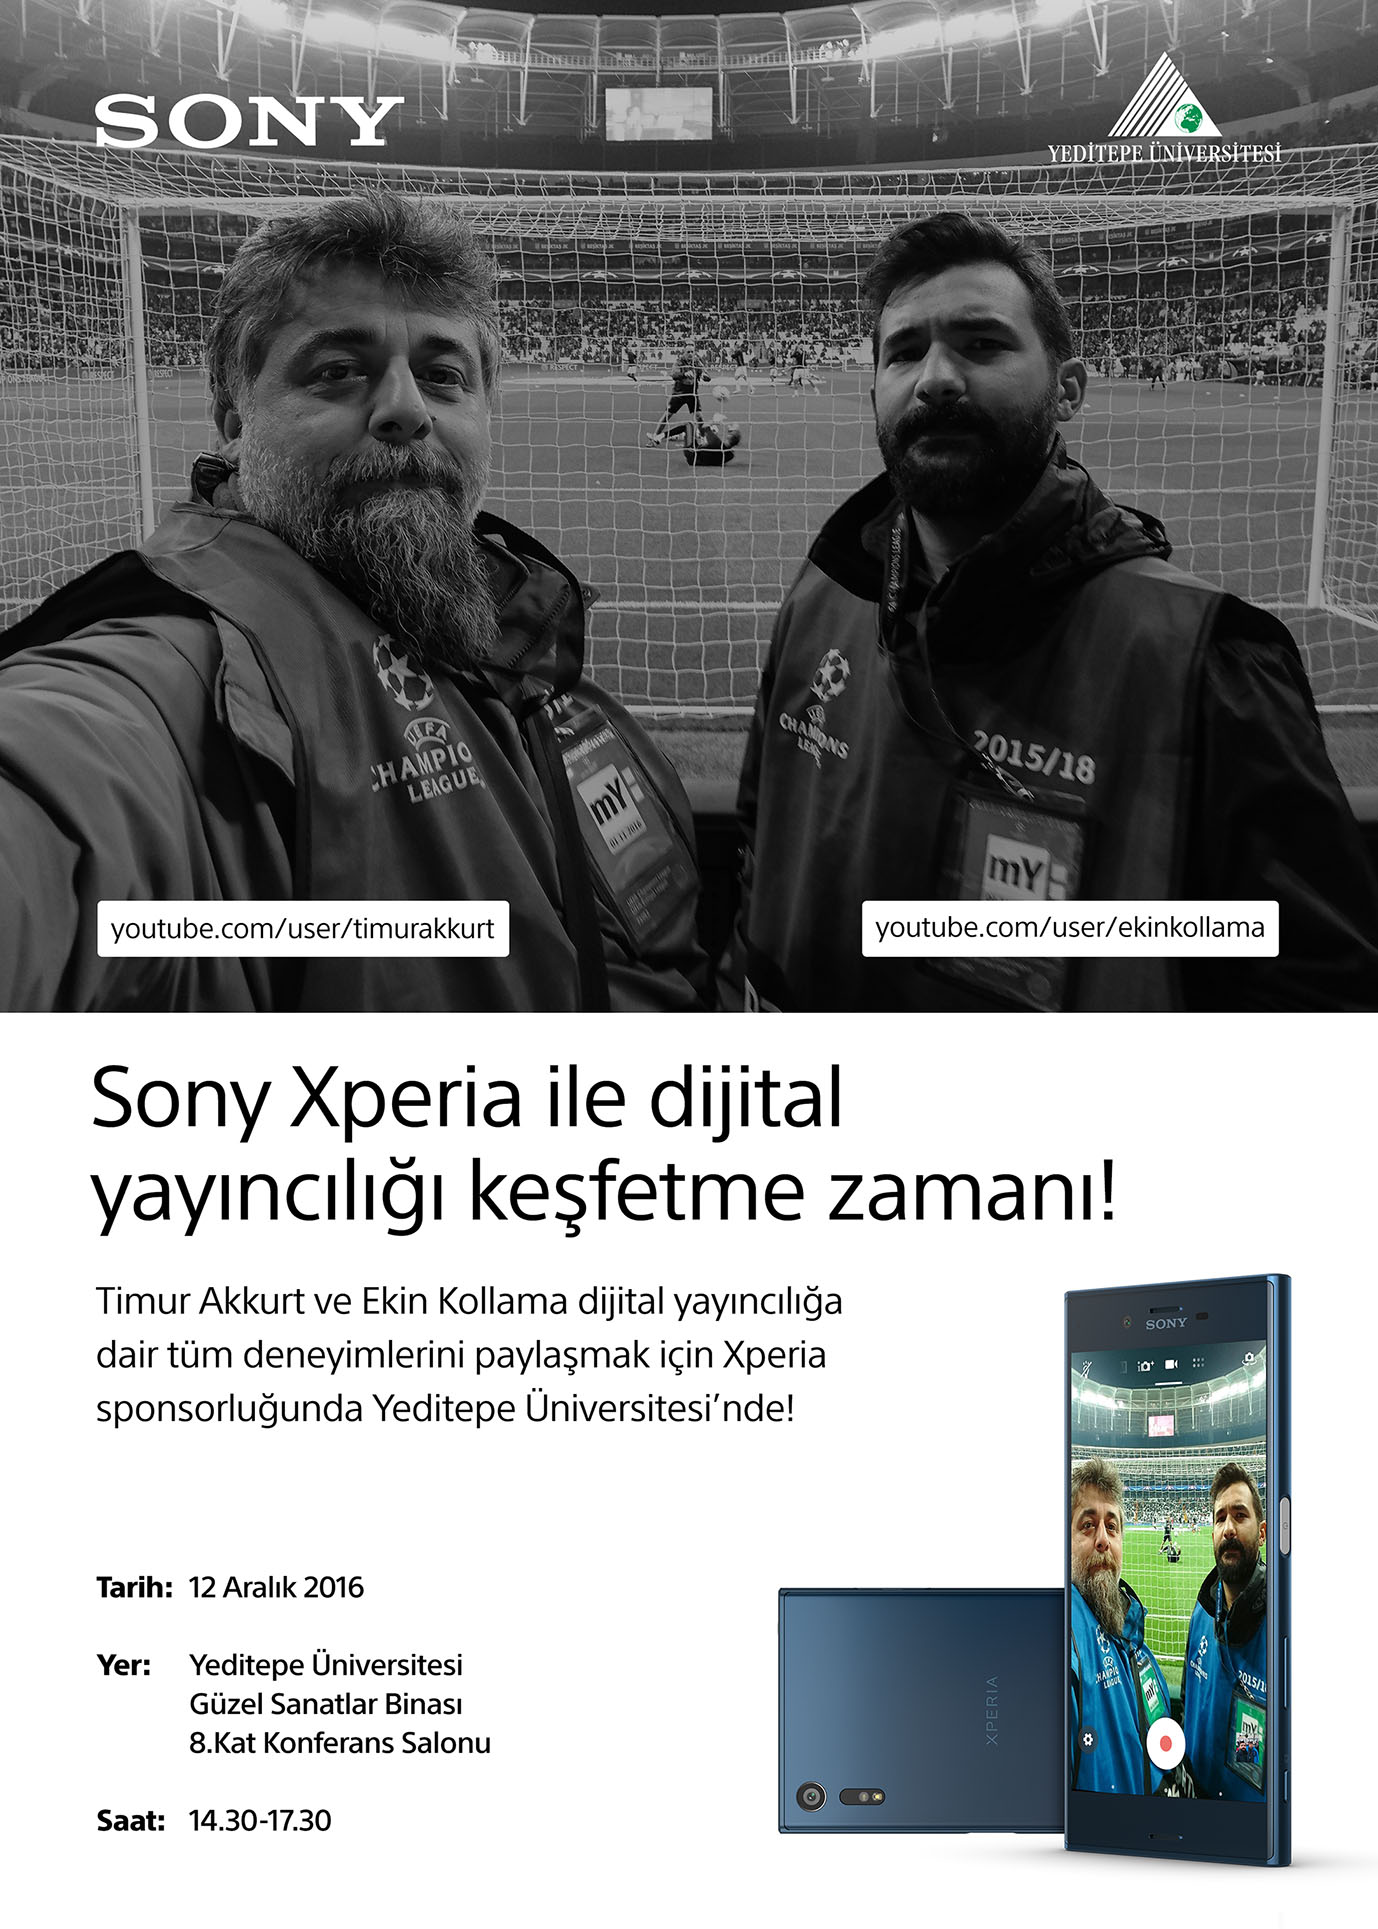 Sony Xperia ile Dijital Yayıncılığı Keşfetme Zamanı